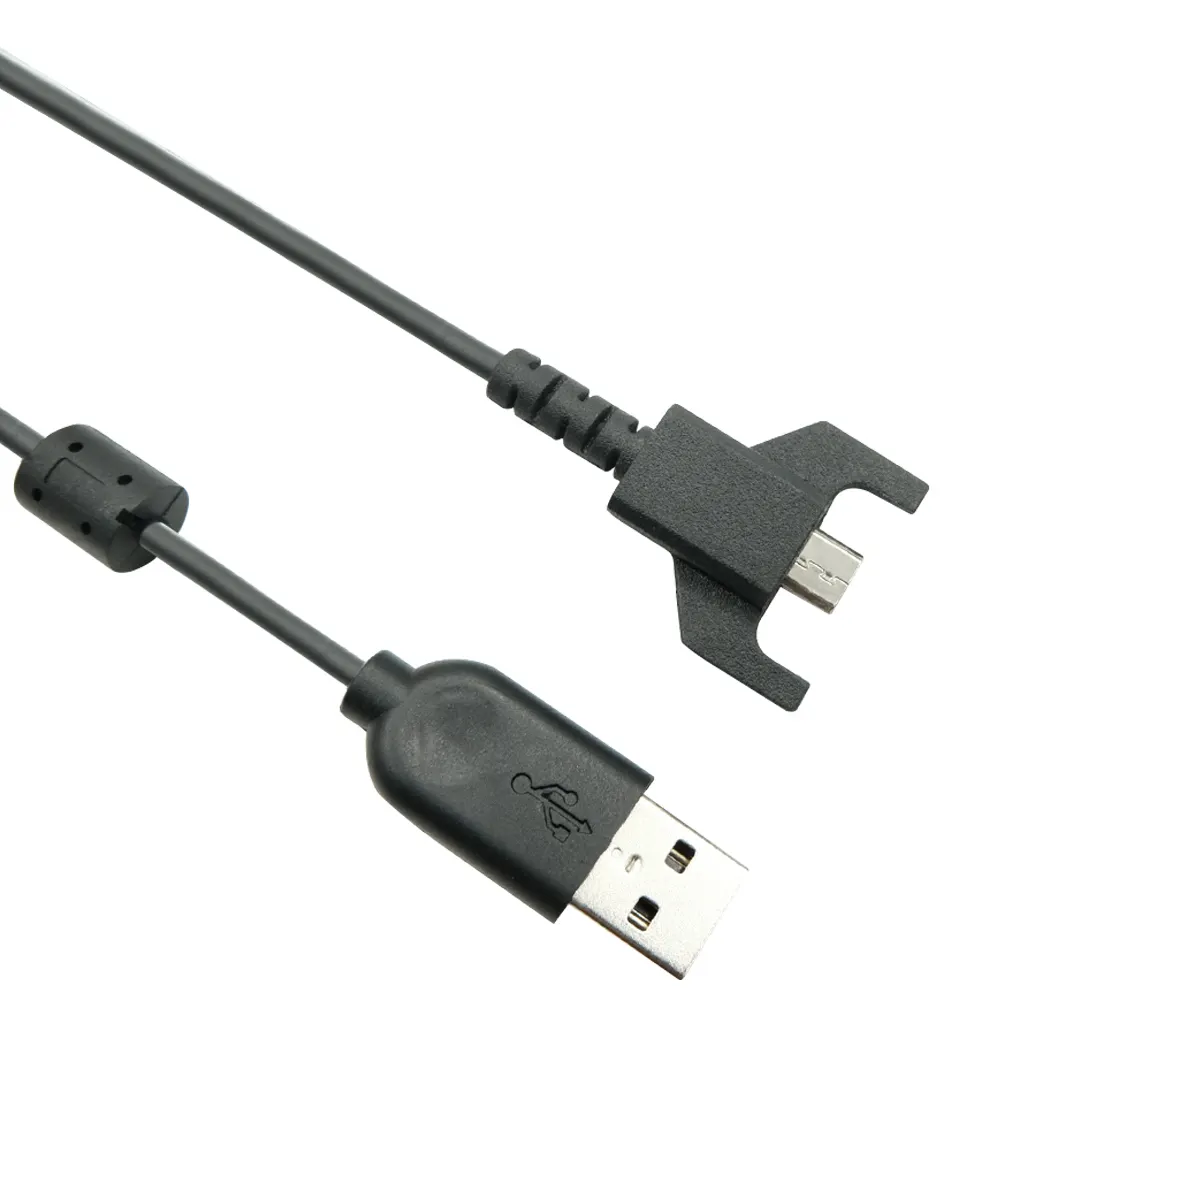 Logitech cavo di ricarica USB originale per G703 G900 G903 G Pro Wireless Pro X Superlight Mouse da Gaming, da USB a Micro USB (nero)